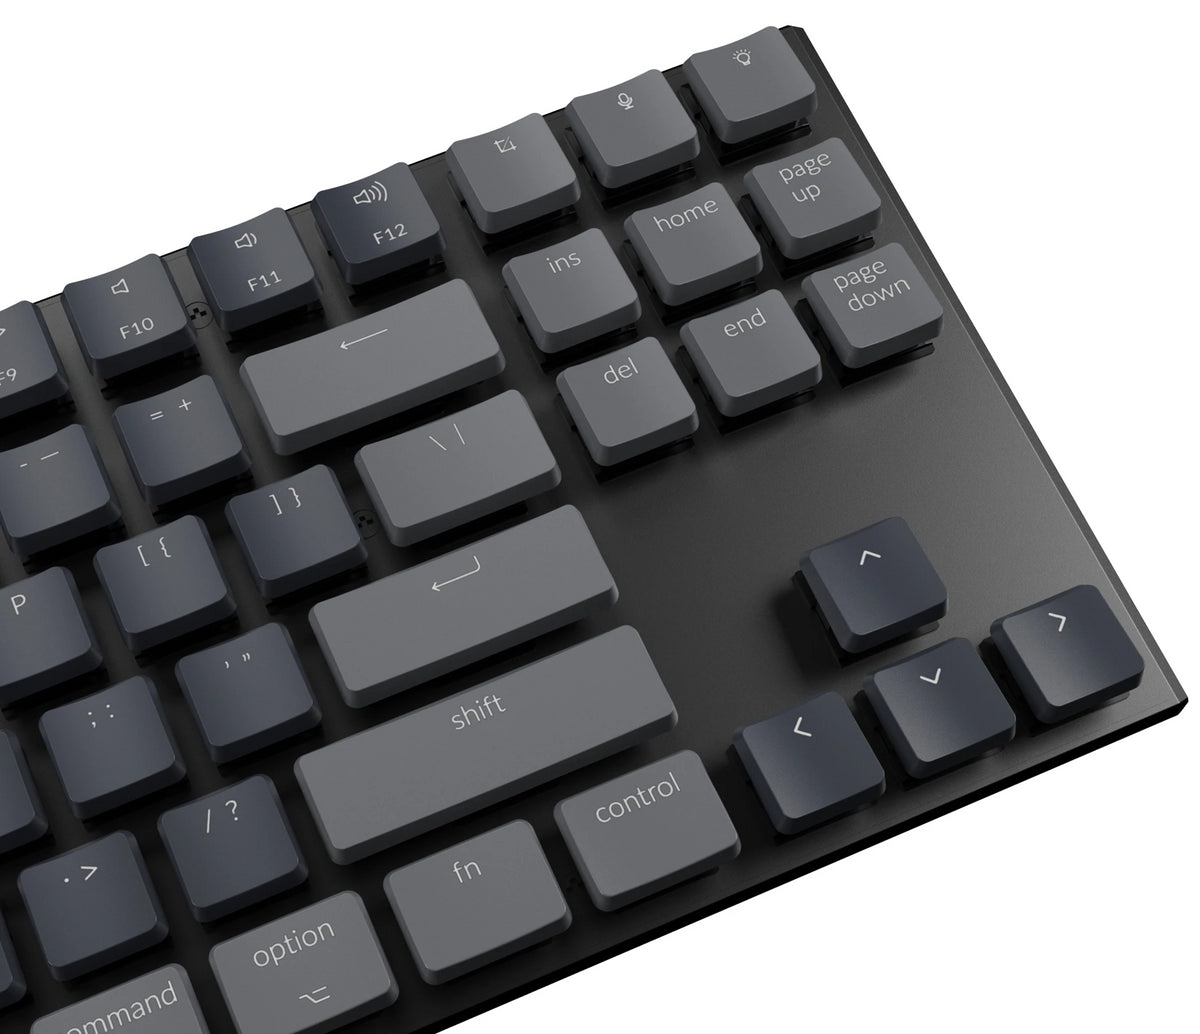 Keychron K1 ultra-slim wireless mechanical keyboard for Mac Windows 104 keys - Gateron low profile mechanical switch RGB backlight